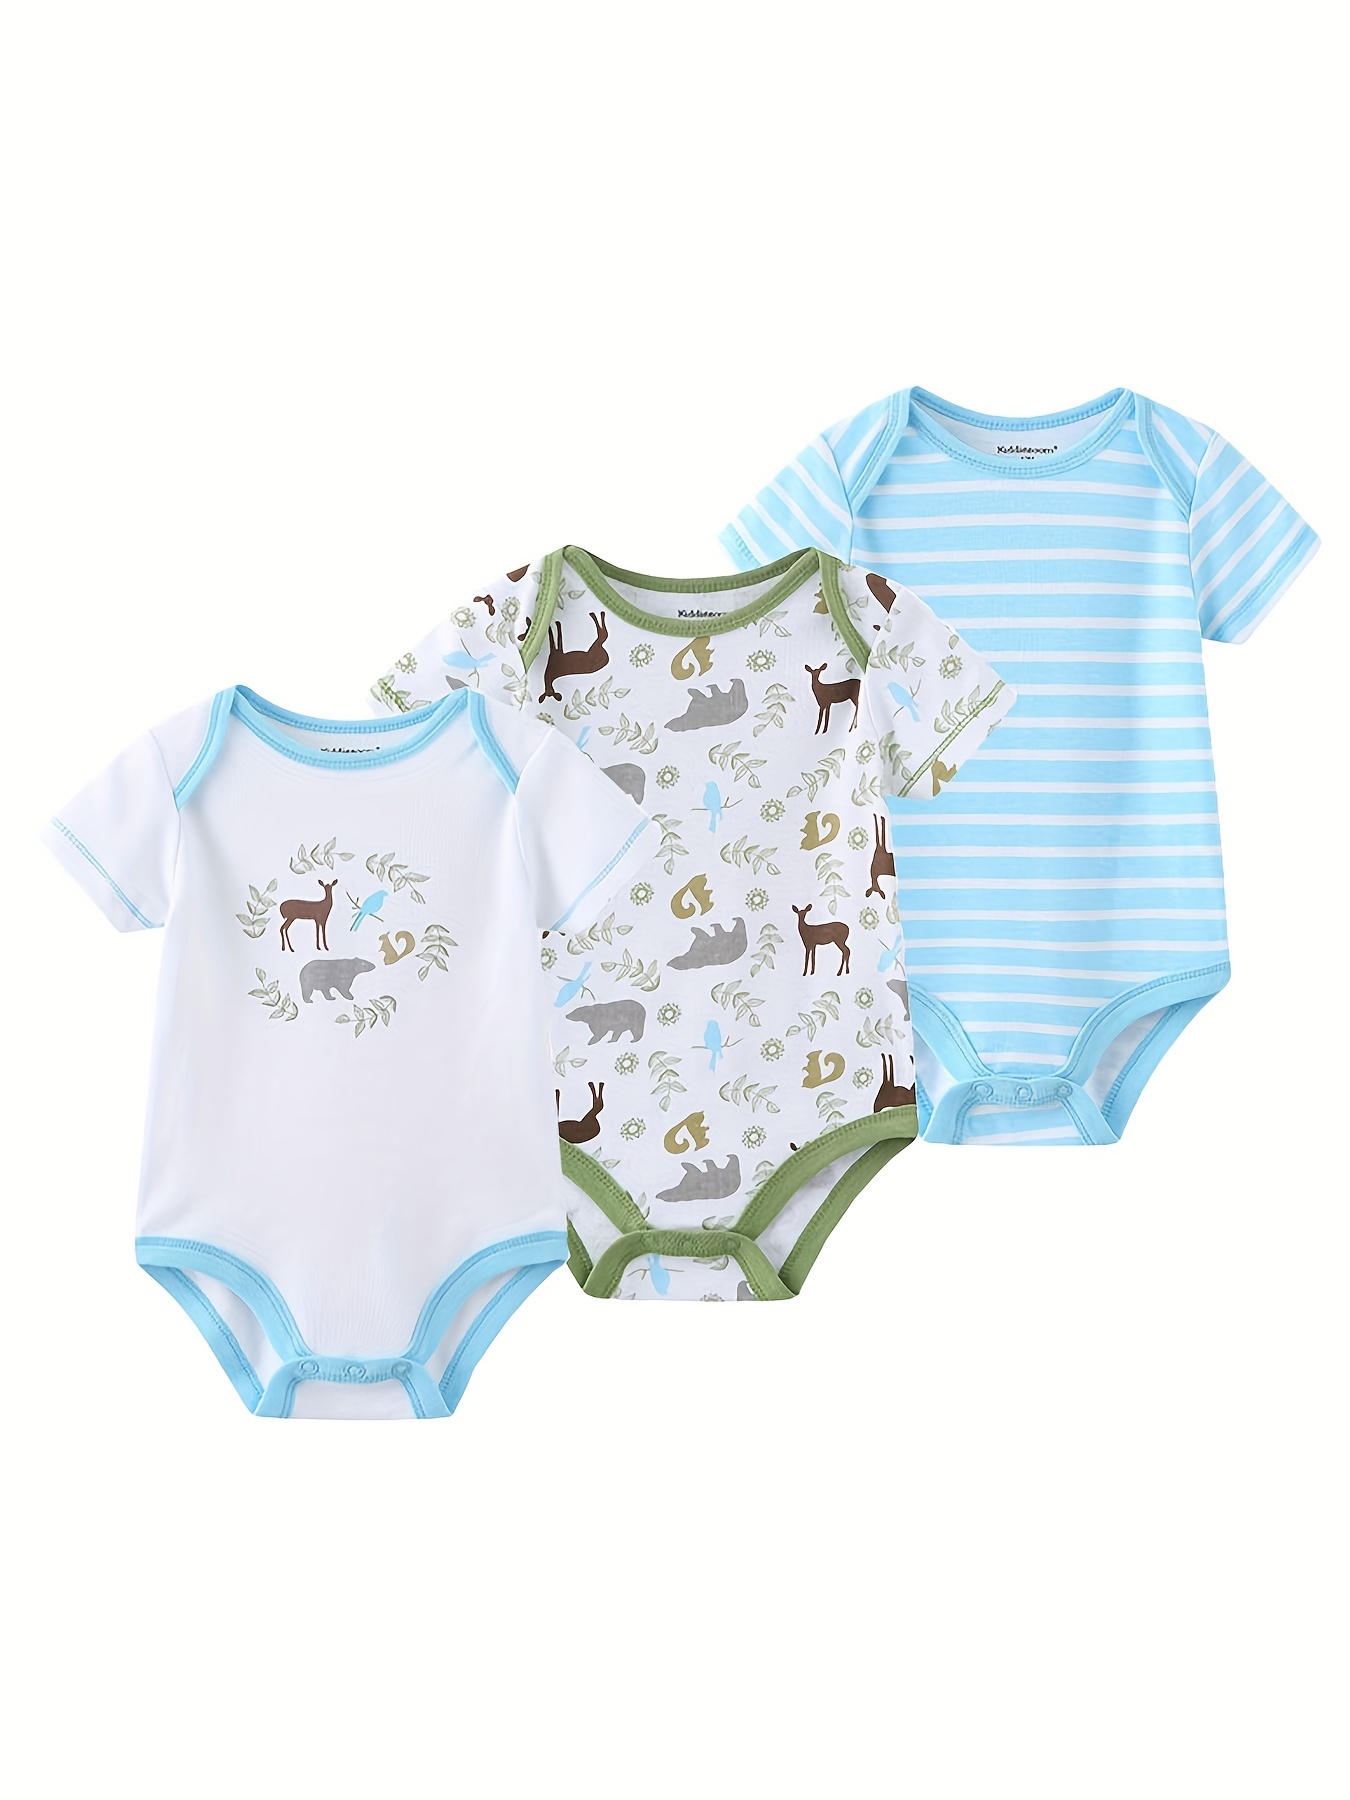 Kiddiezoom Newborn Baby Unisex Cotton Bodysuits 0-12 Months Baby